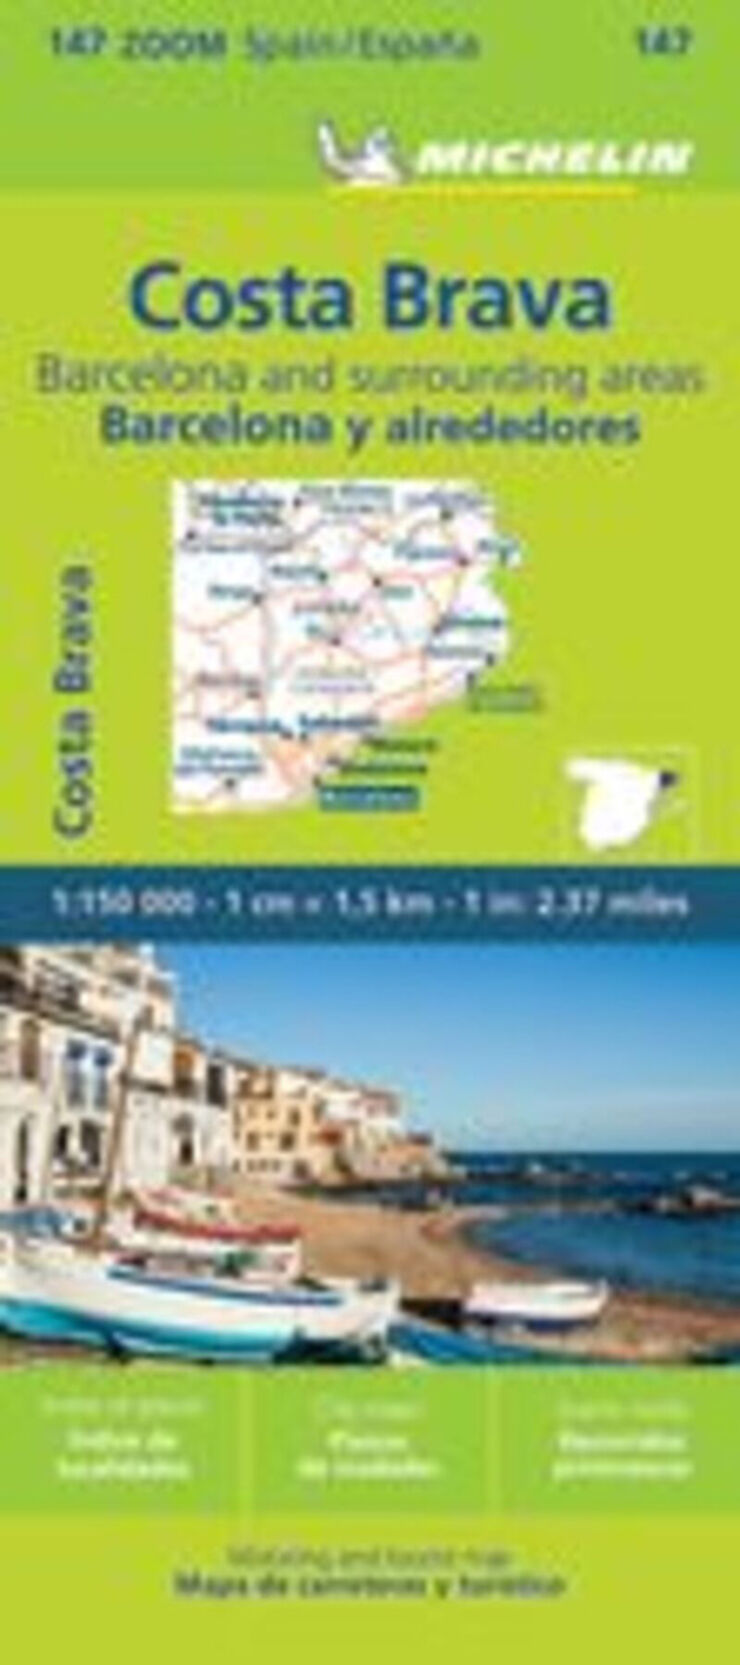 Mapa zoom 147 Costa Brava. Barcelona y alrededores